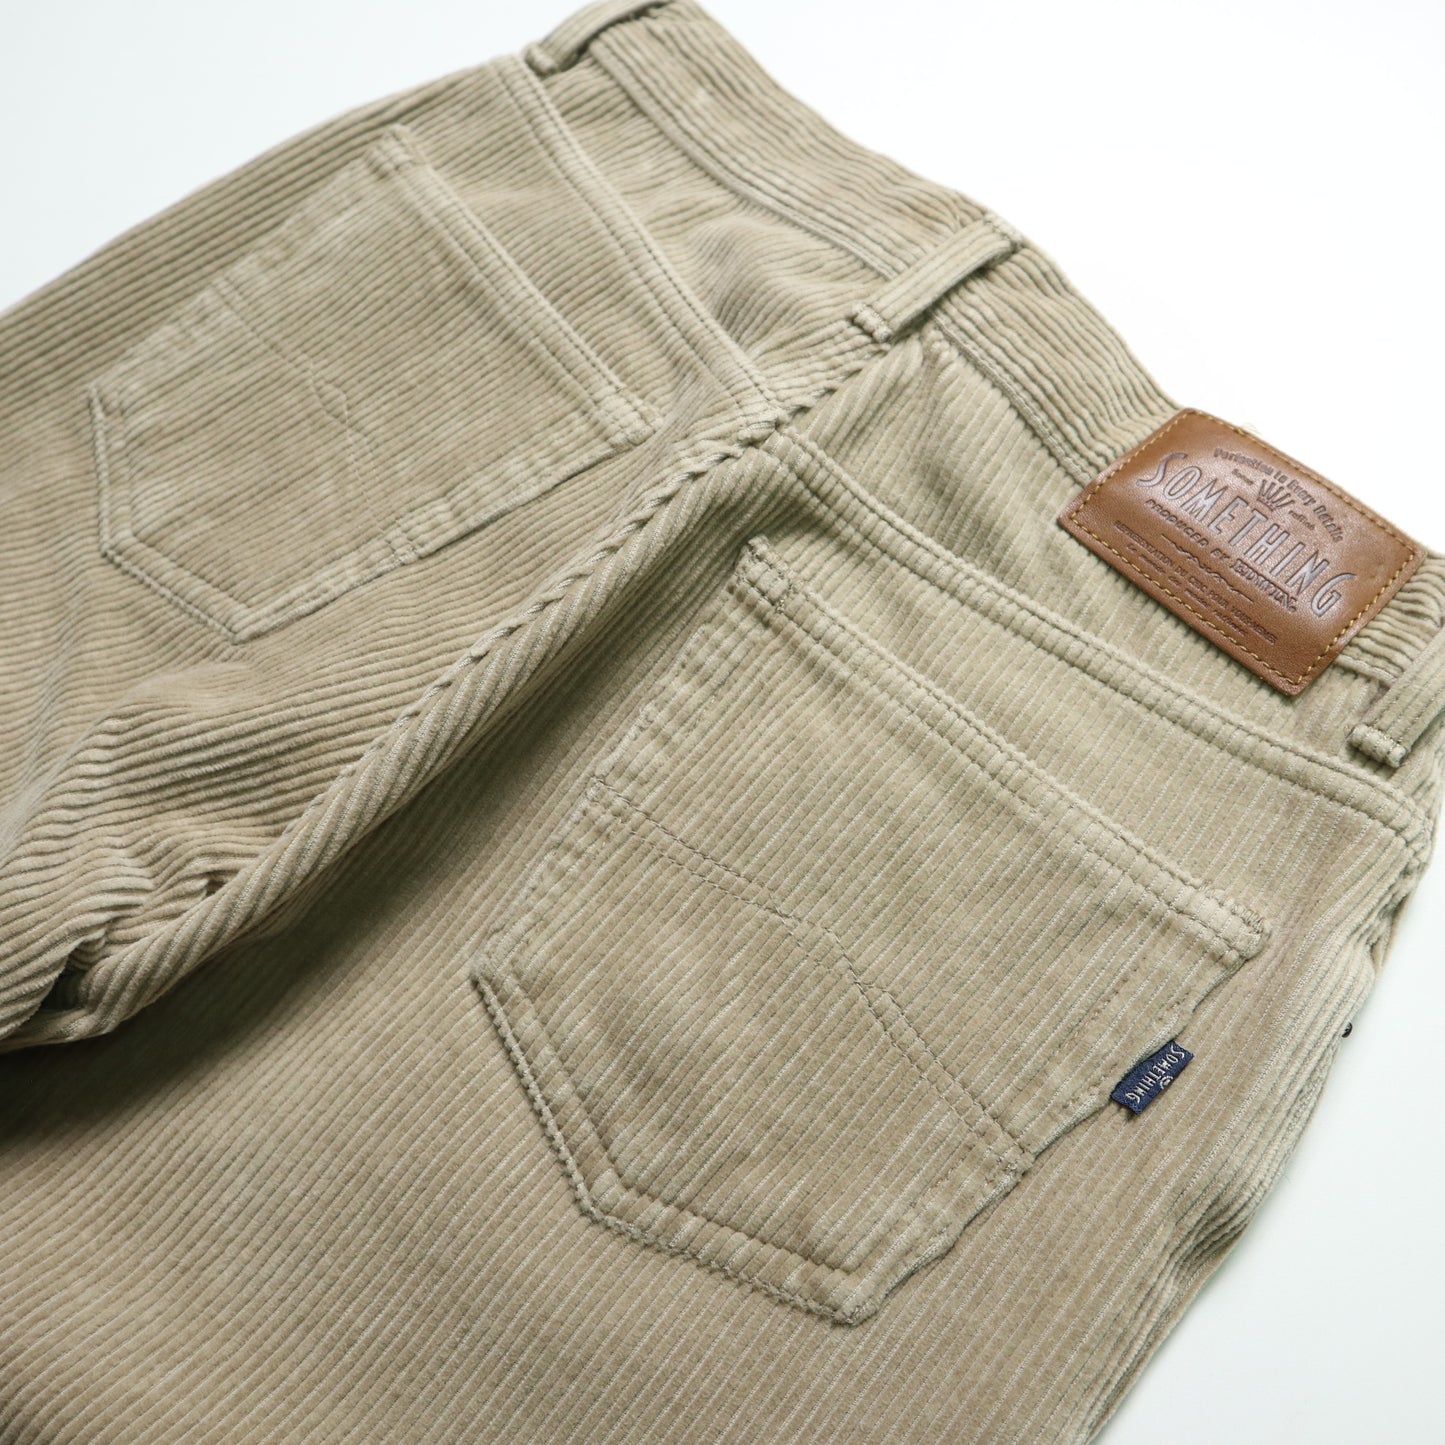 (26W) Something Japanese made khaki thick corduroy pants